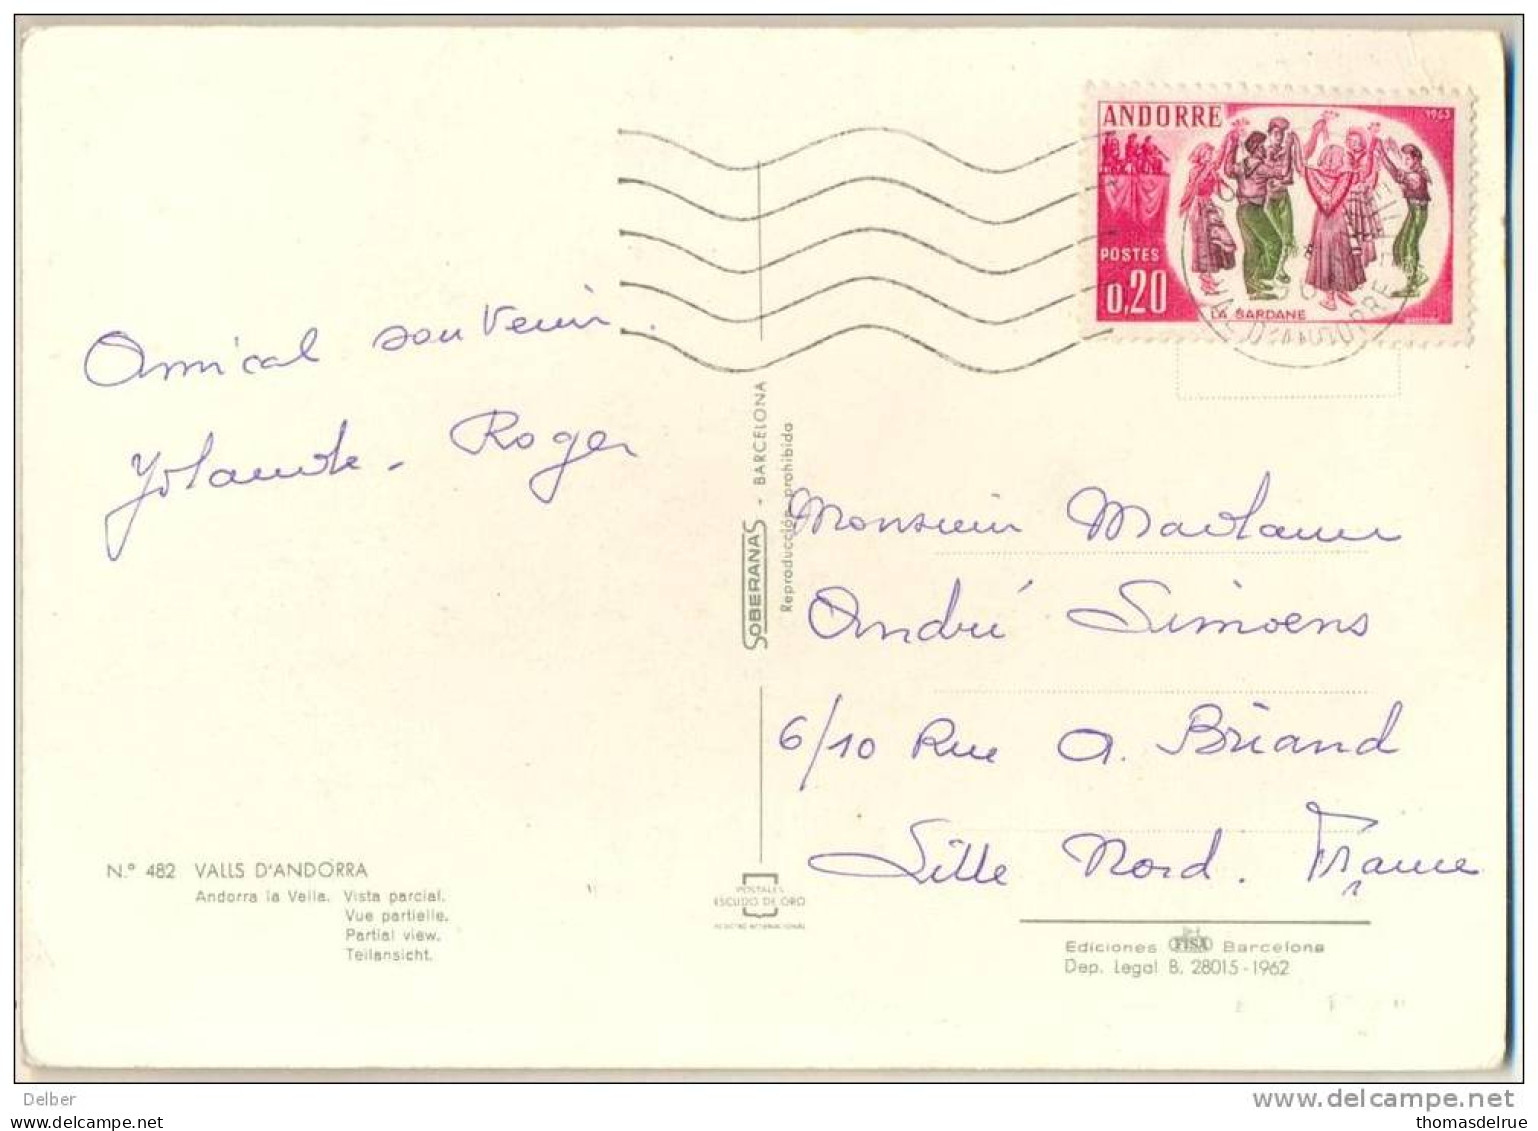 _2n723: N° 166 / Carte Postale: N° 480 VALLS D'ANDORRA ...Vista Parcial... - Briefe U. Dokumente